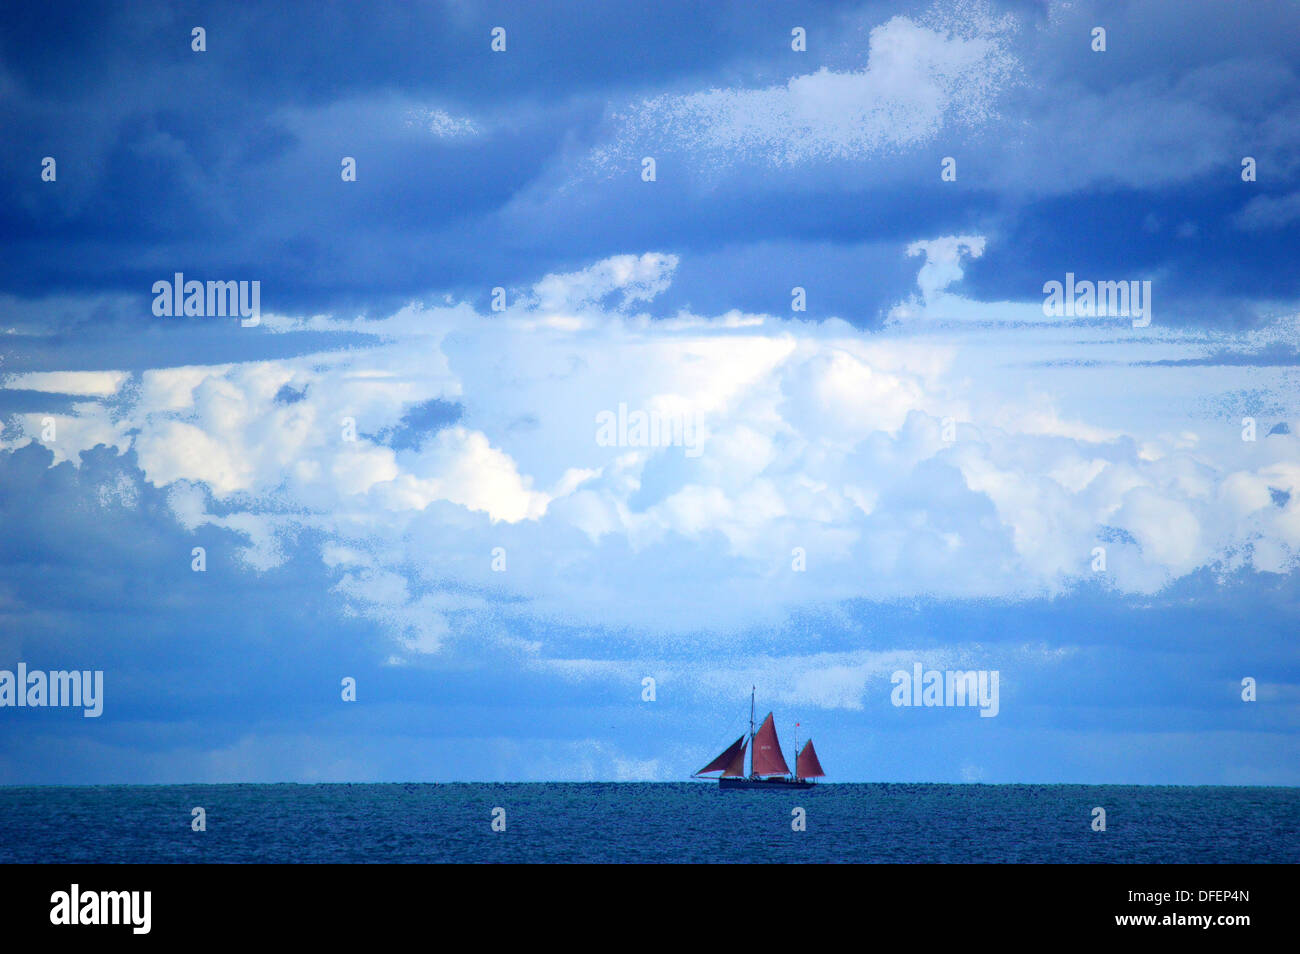 Rote Segel Schiff am Horizont mit stürmischen wolkenverhangenen Himmel Stockfoto